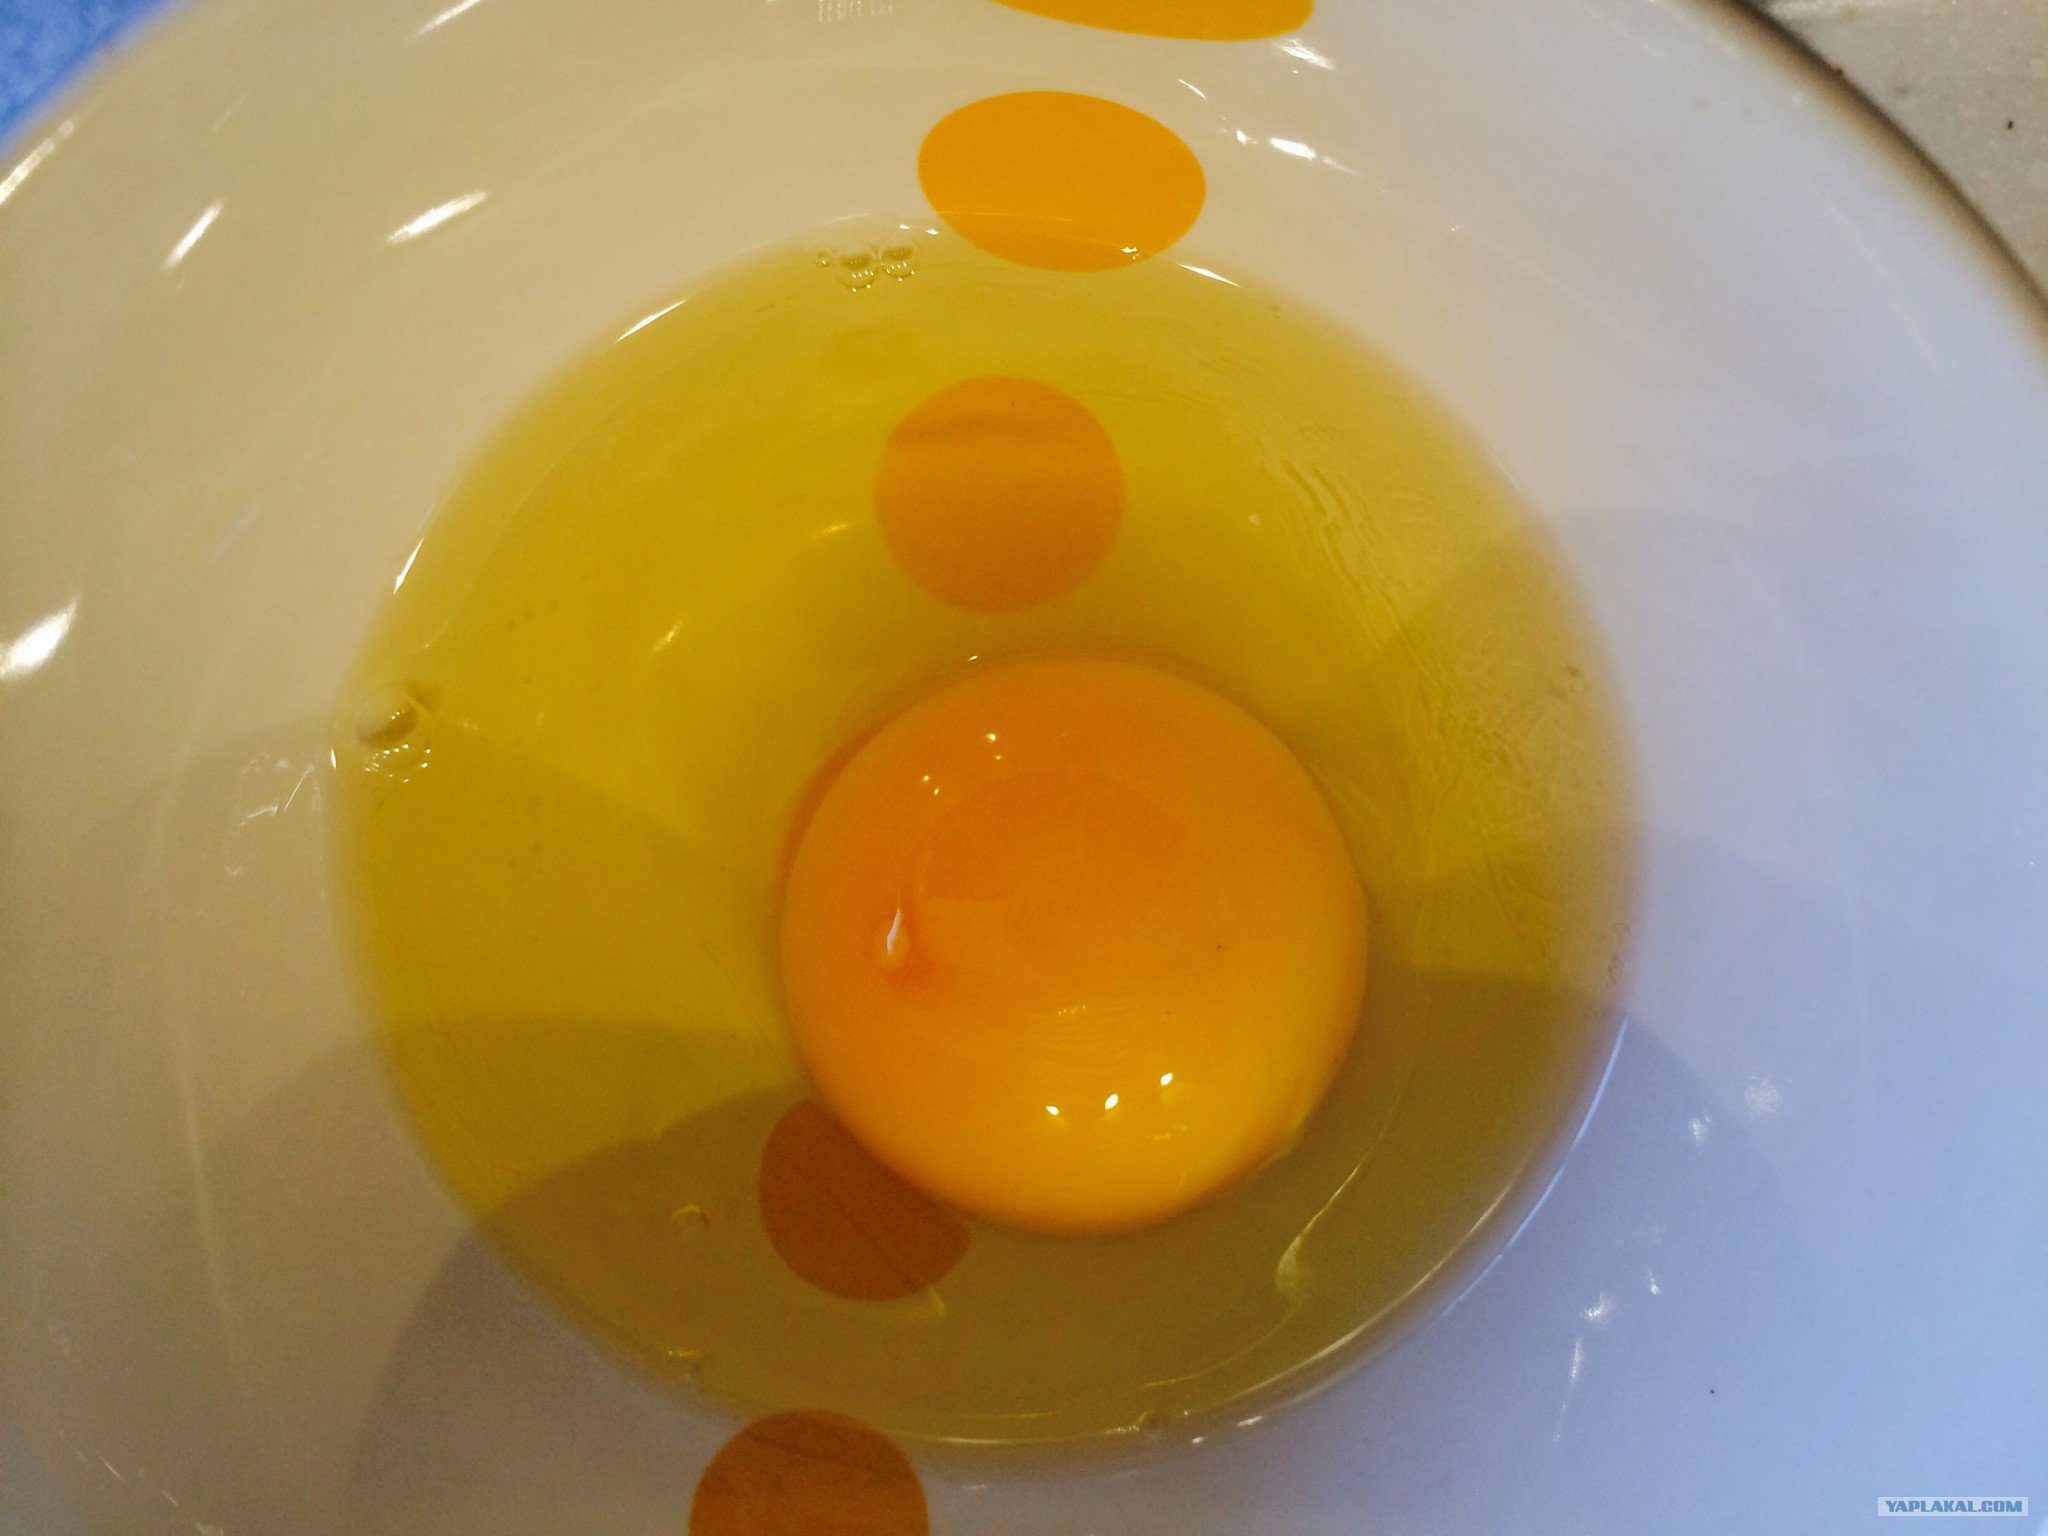 Куриное яйцо без белка. Желтый белок у яйца. Белок в яйце желтого цвета. Белок у яйца желтоватого цвета. Яйцо желтого цвета внутри.